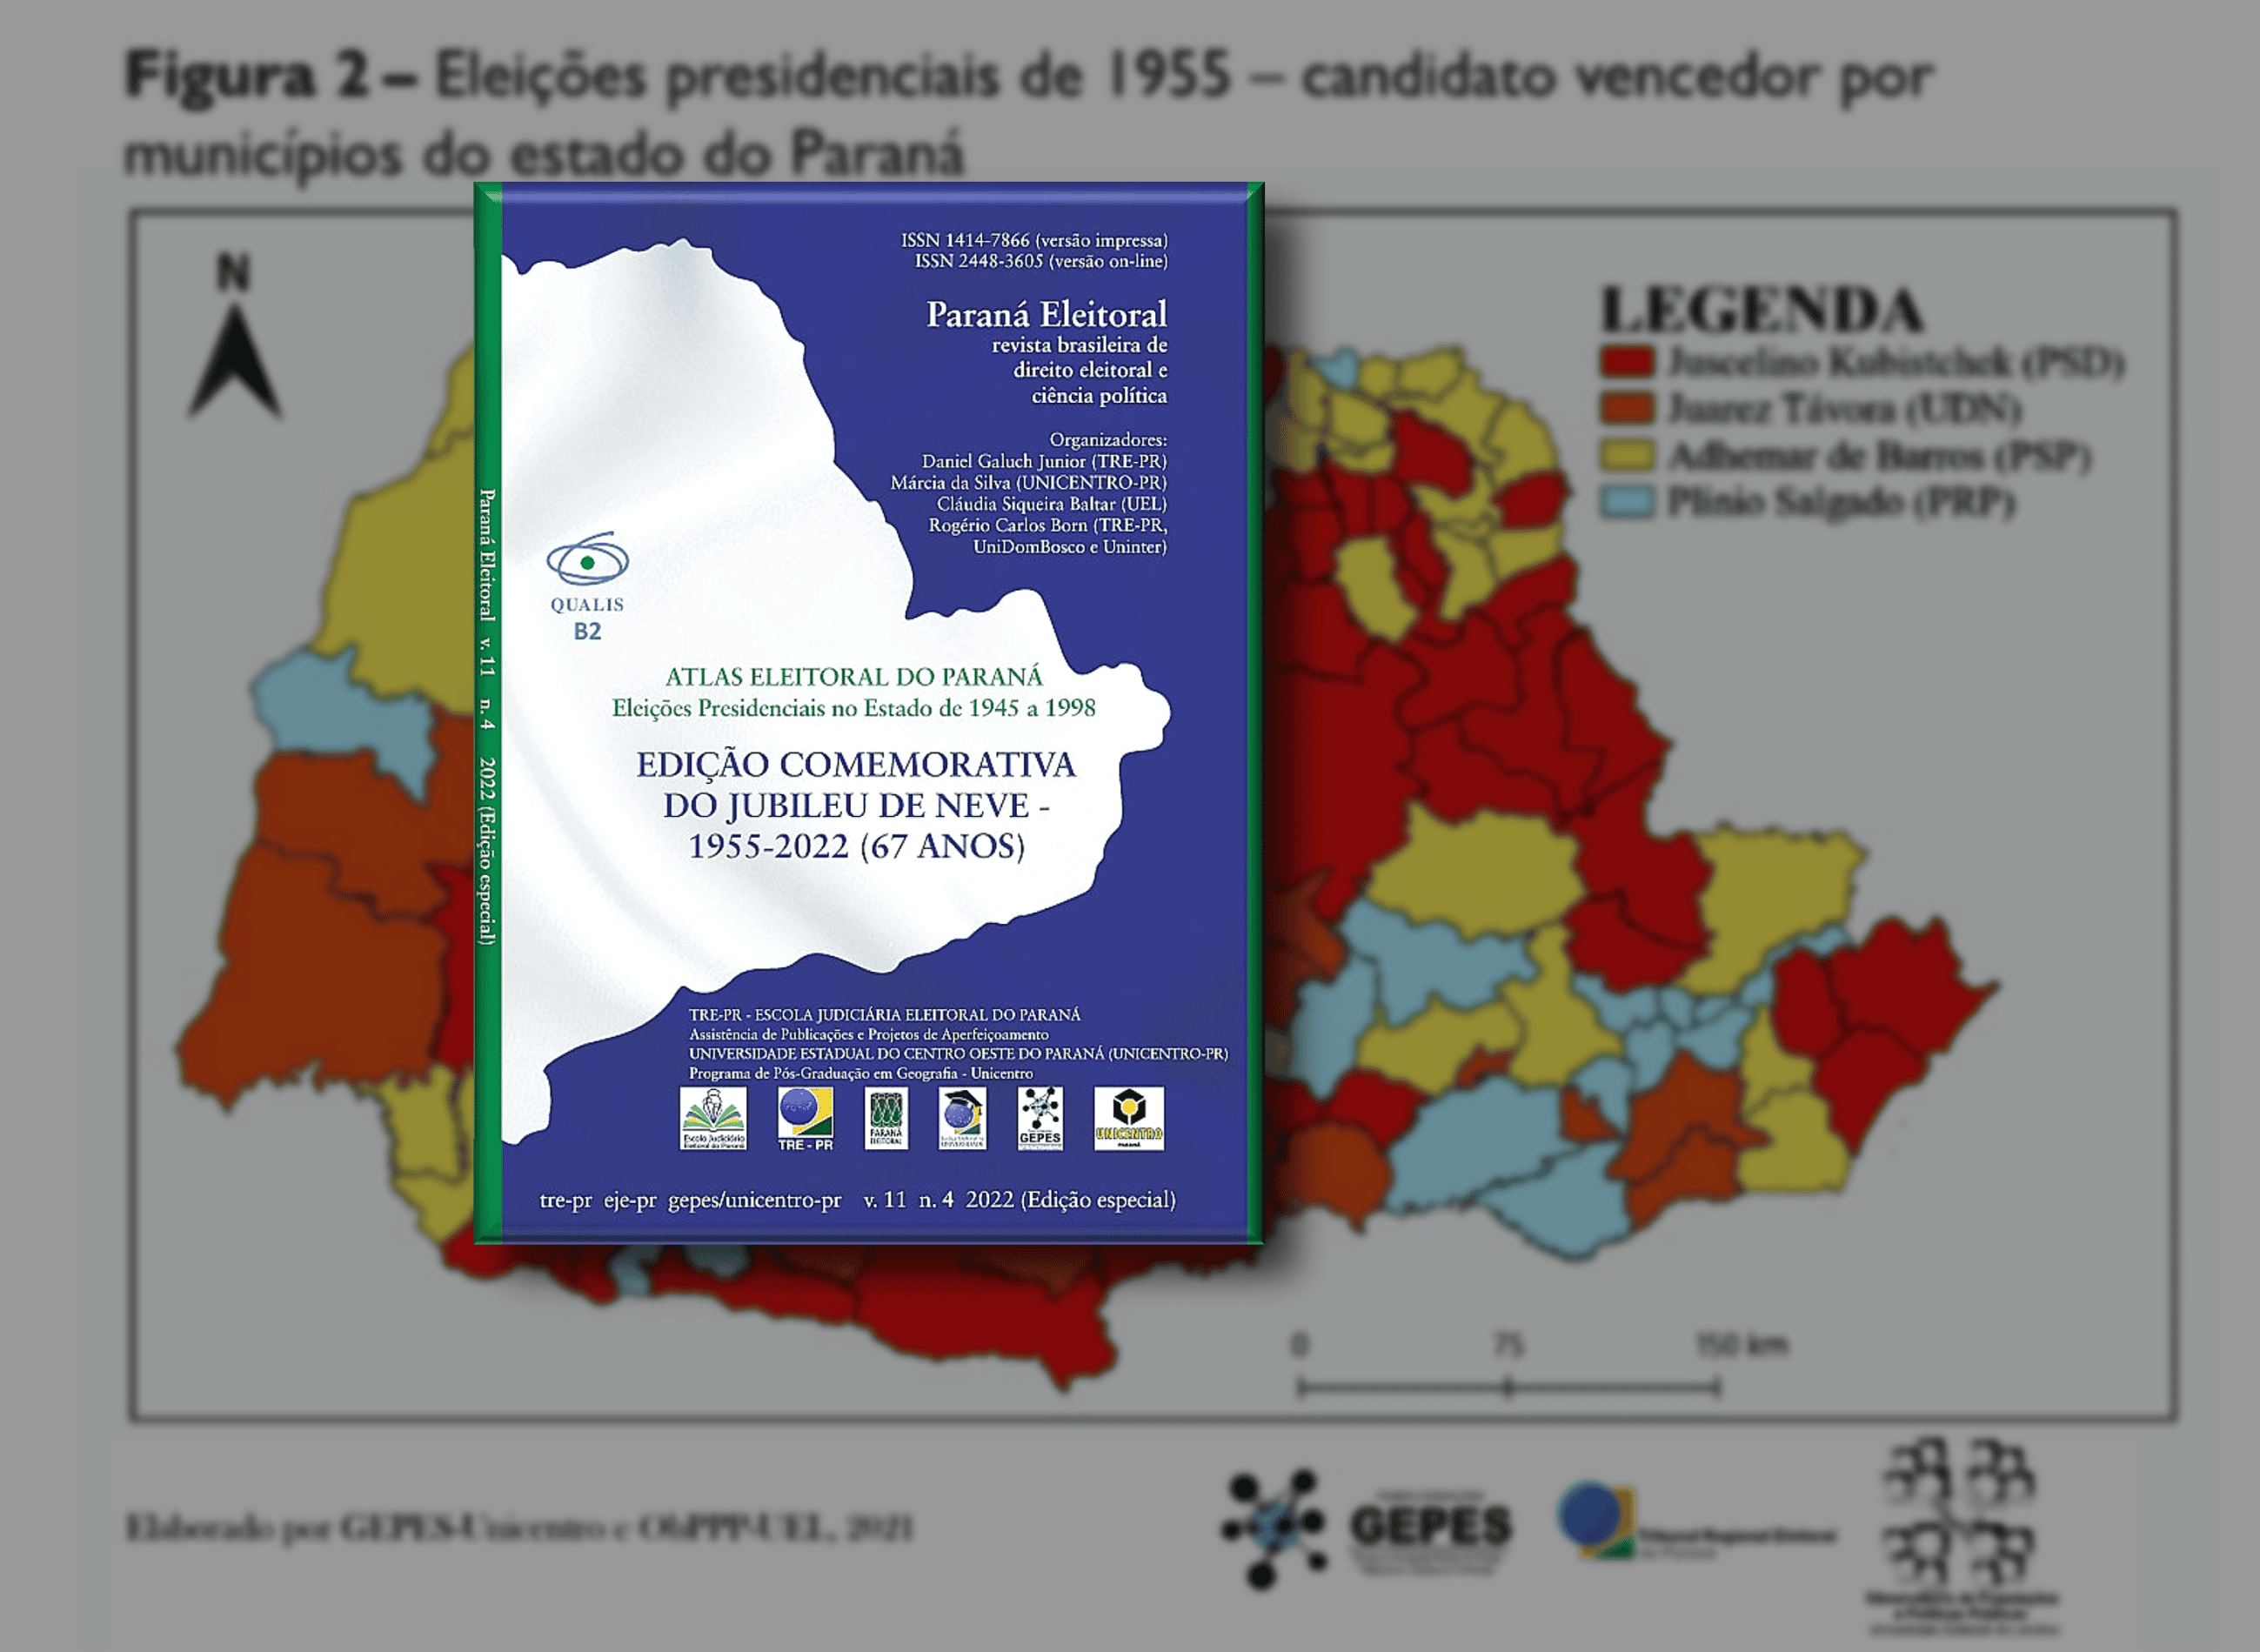 Capa do Atlas Eleitoral do Paraná - 1955 e mapa eleitoral ao fundo